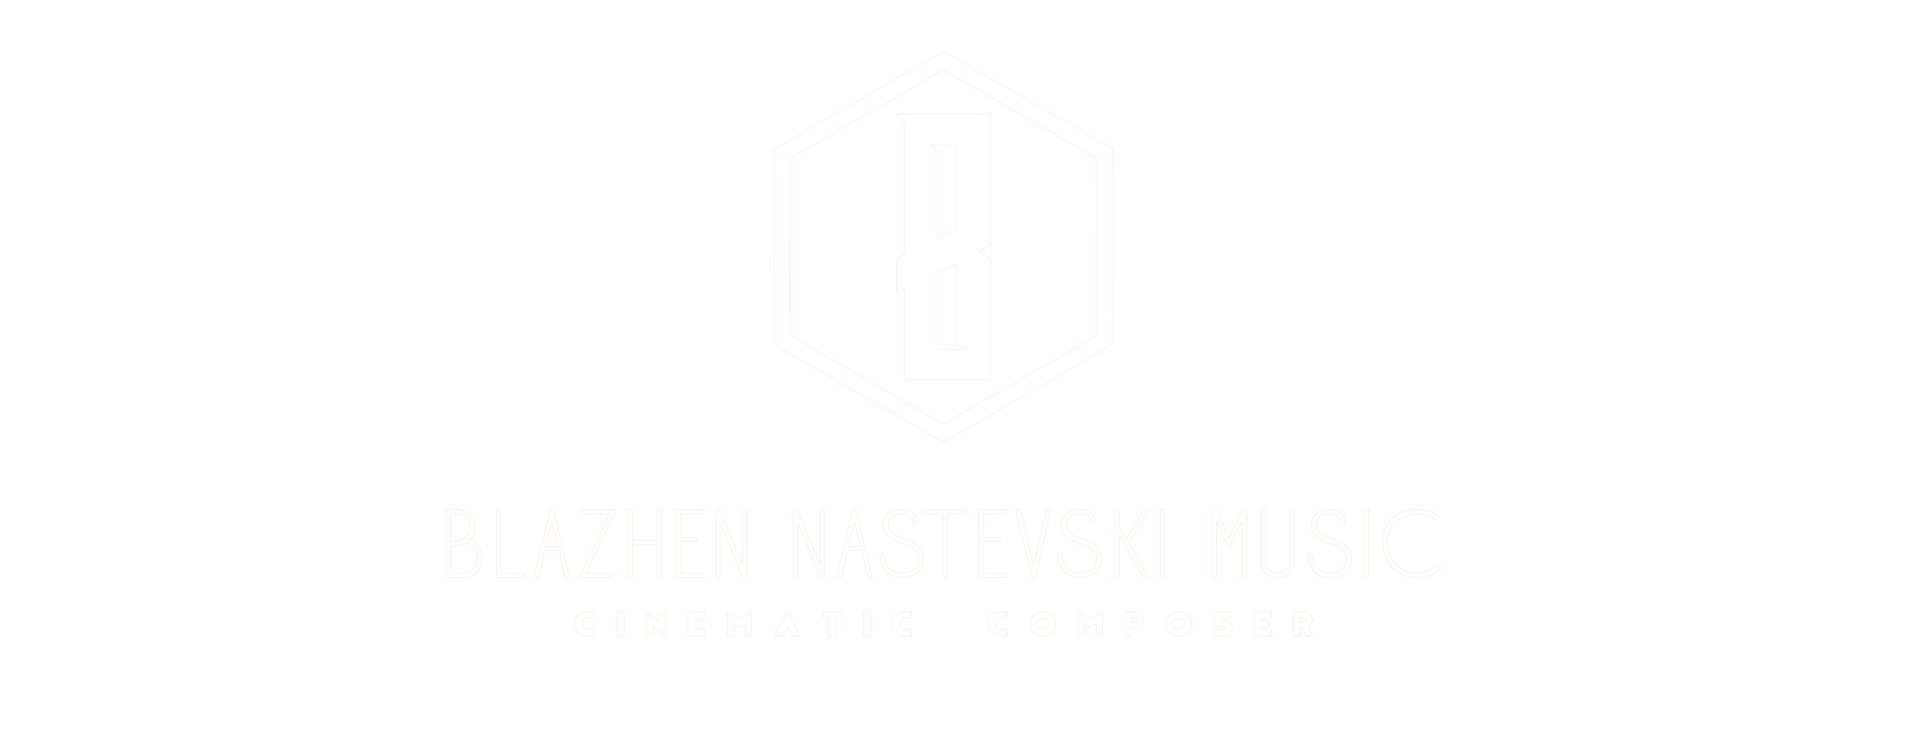 Blazhen Nastevski – Composer